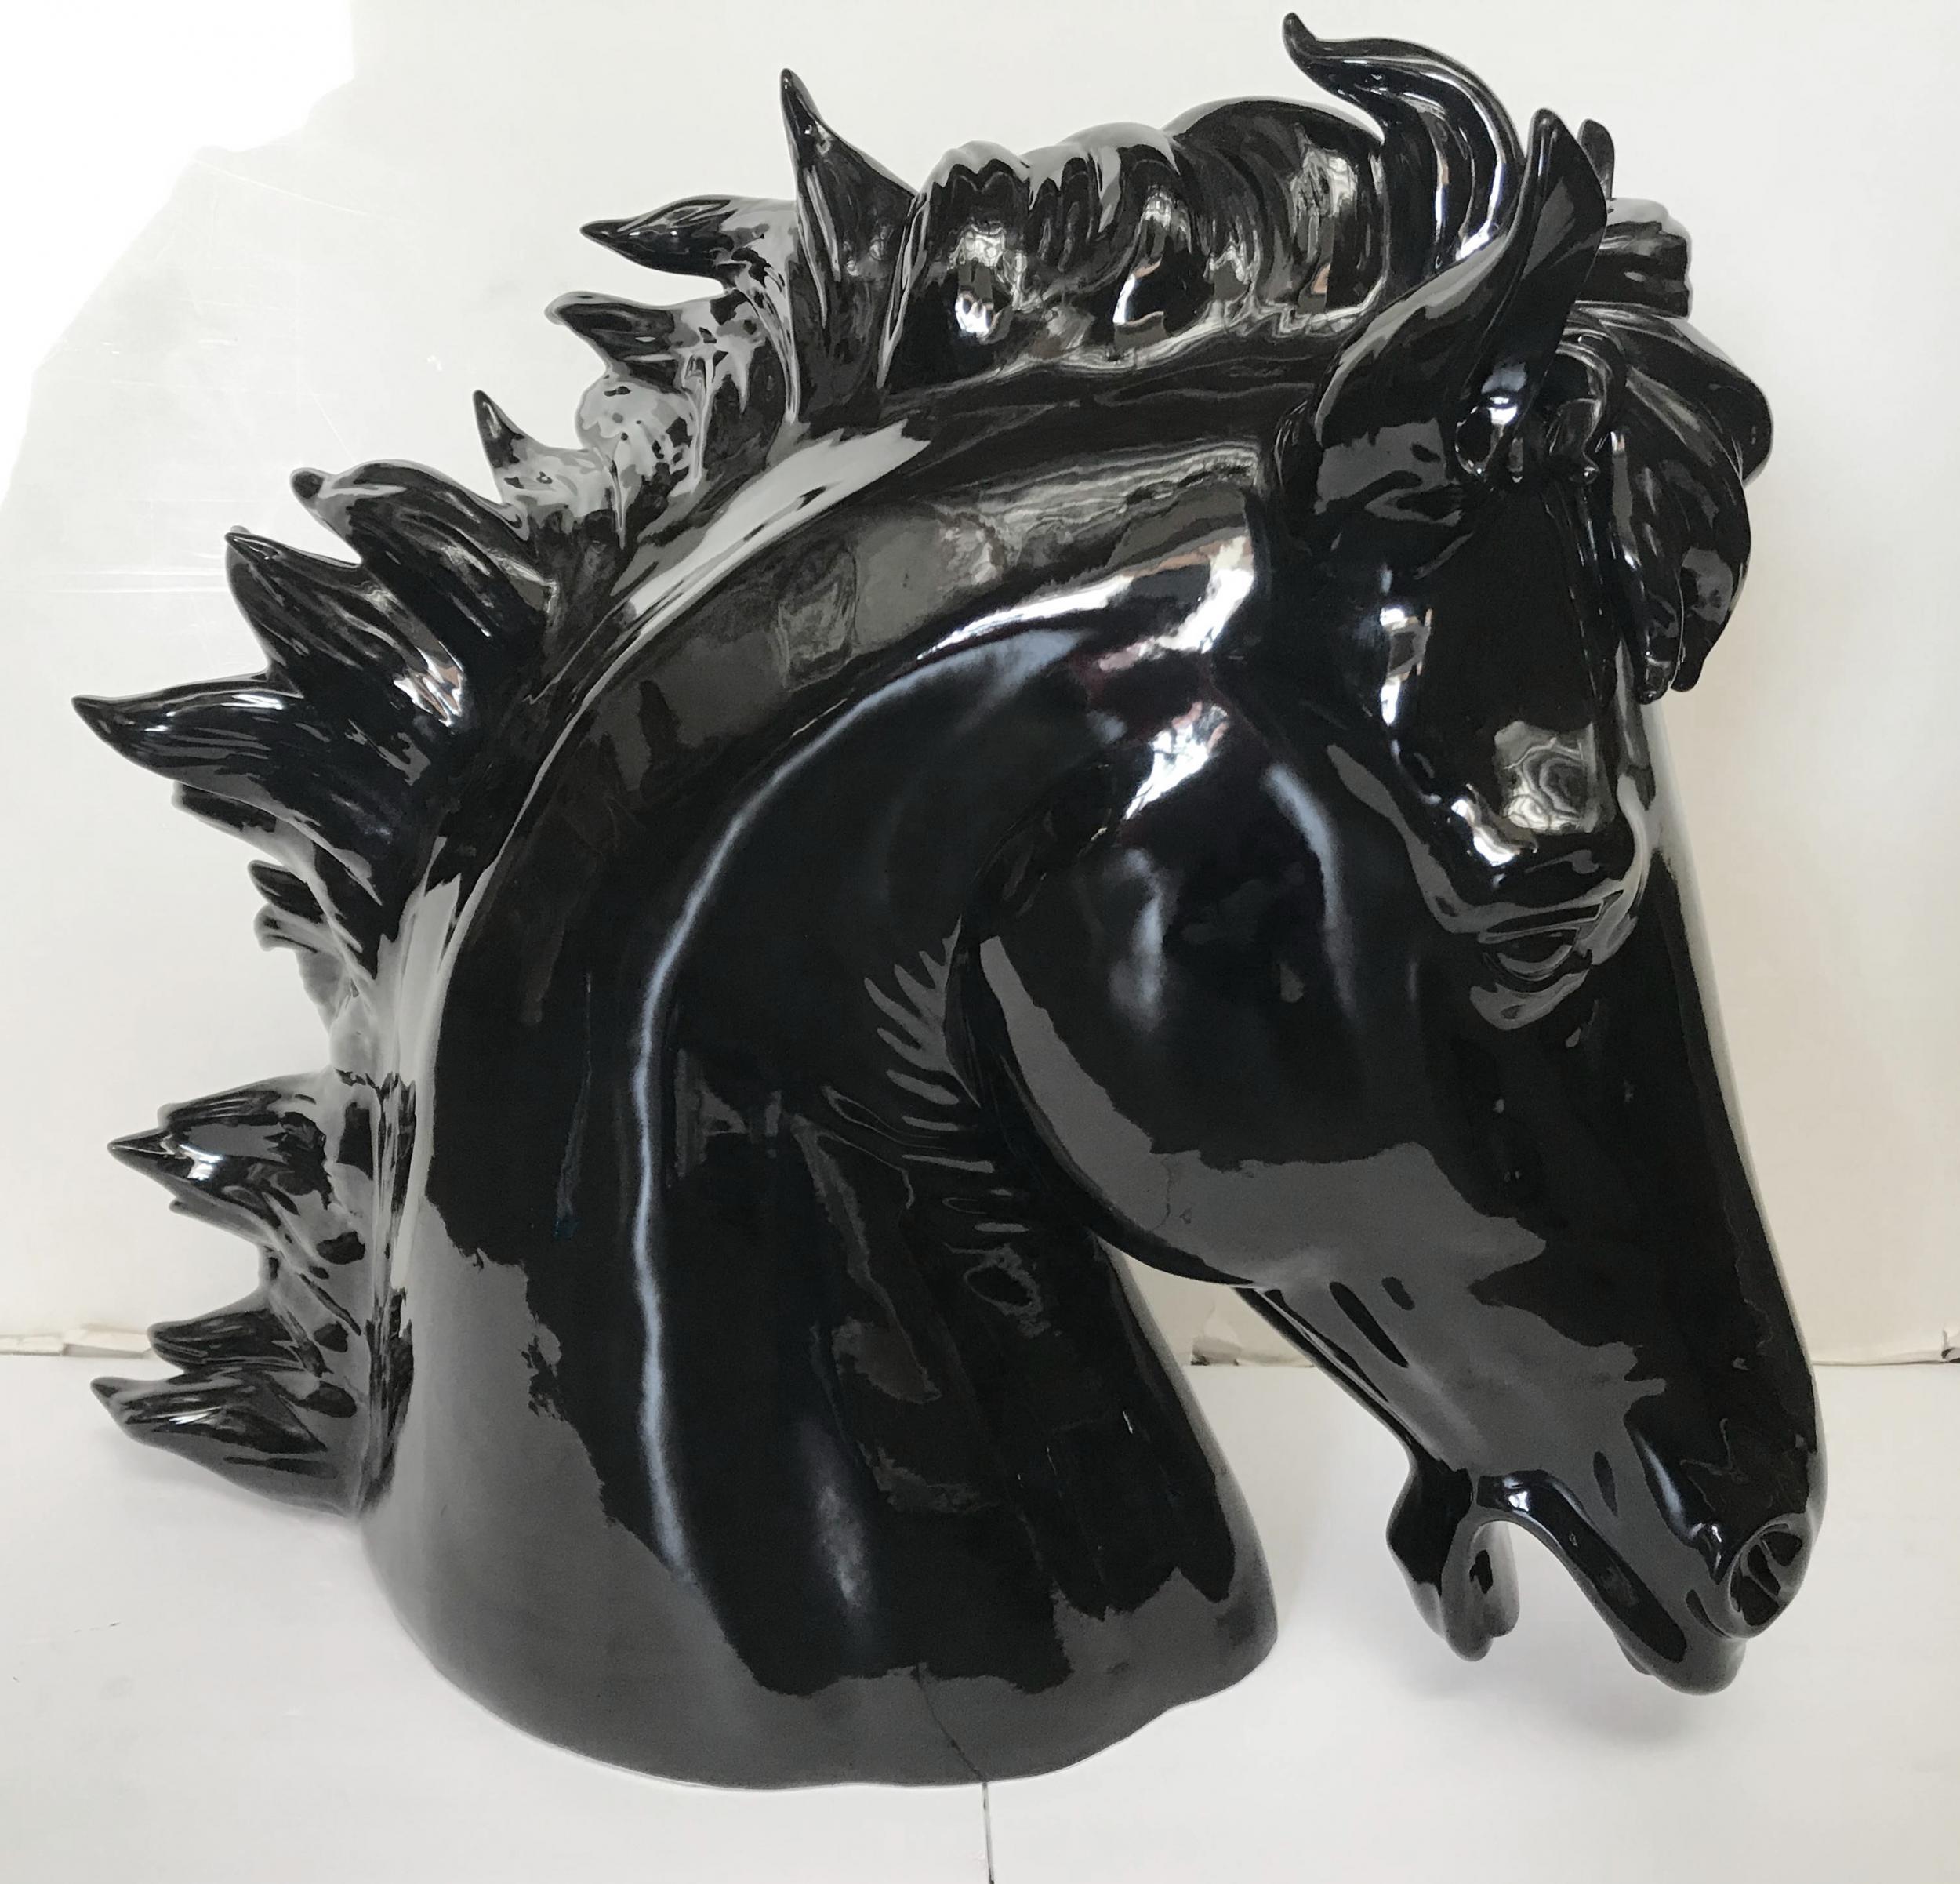 Italian black ceramic decorative horse head sculpture / Made in Italy.